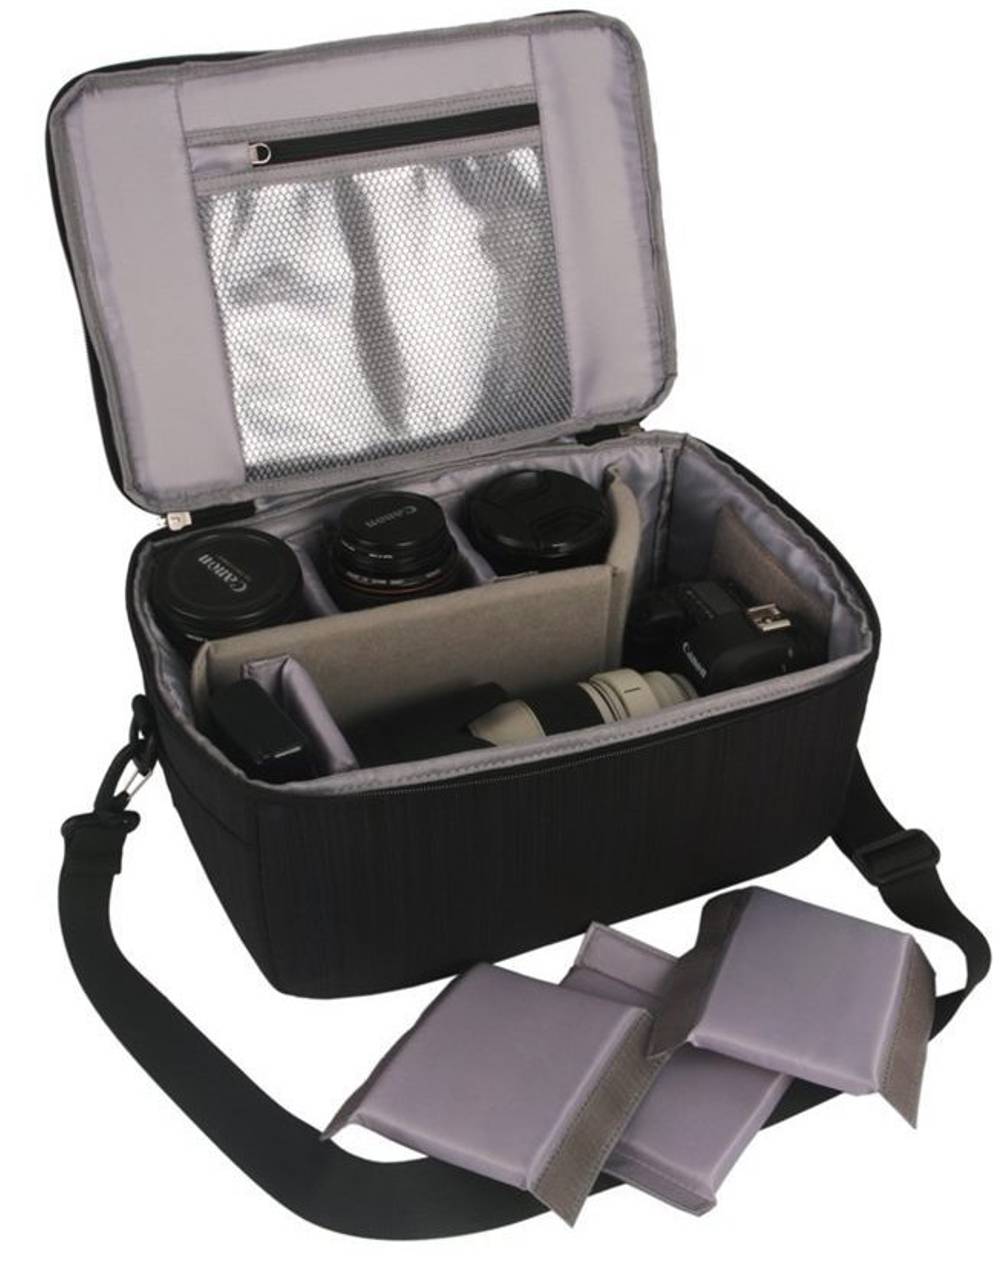 Eine Kameratasche ist ein nützlicher Begleiter für allerlei Kamera-Zubehör.